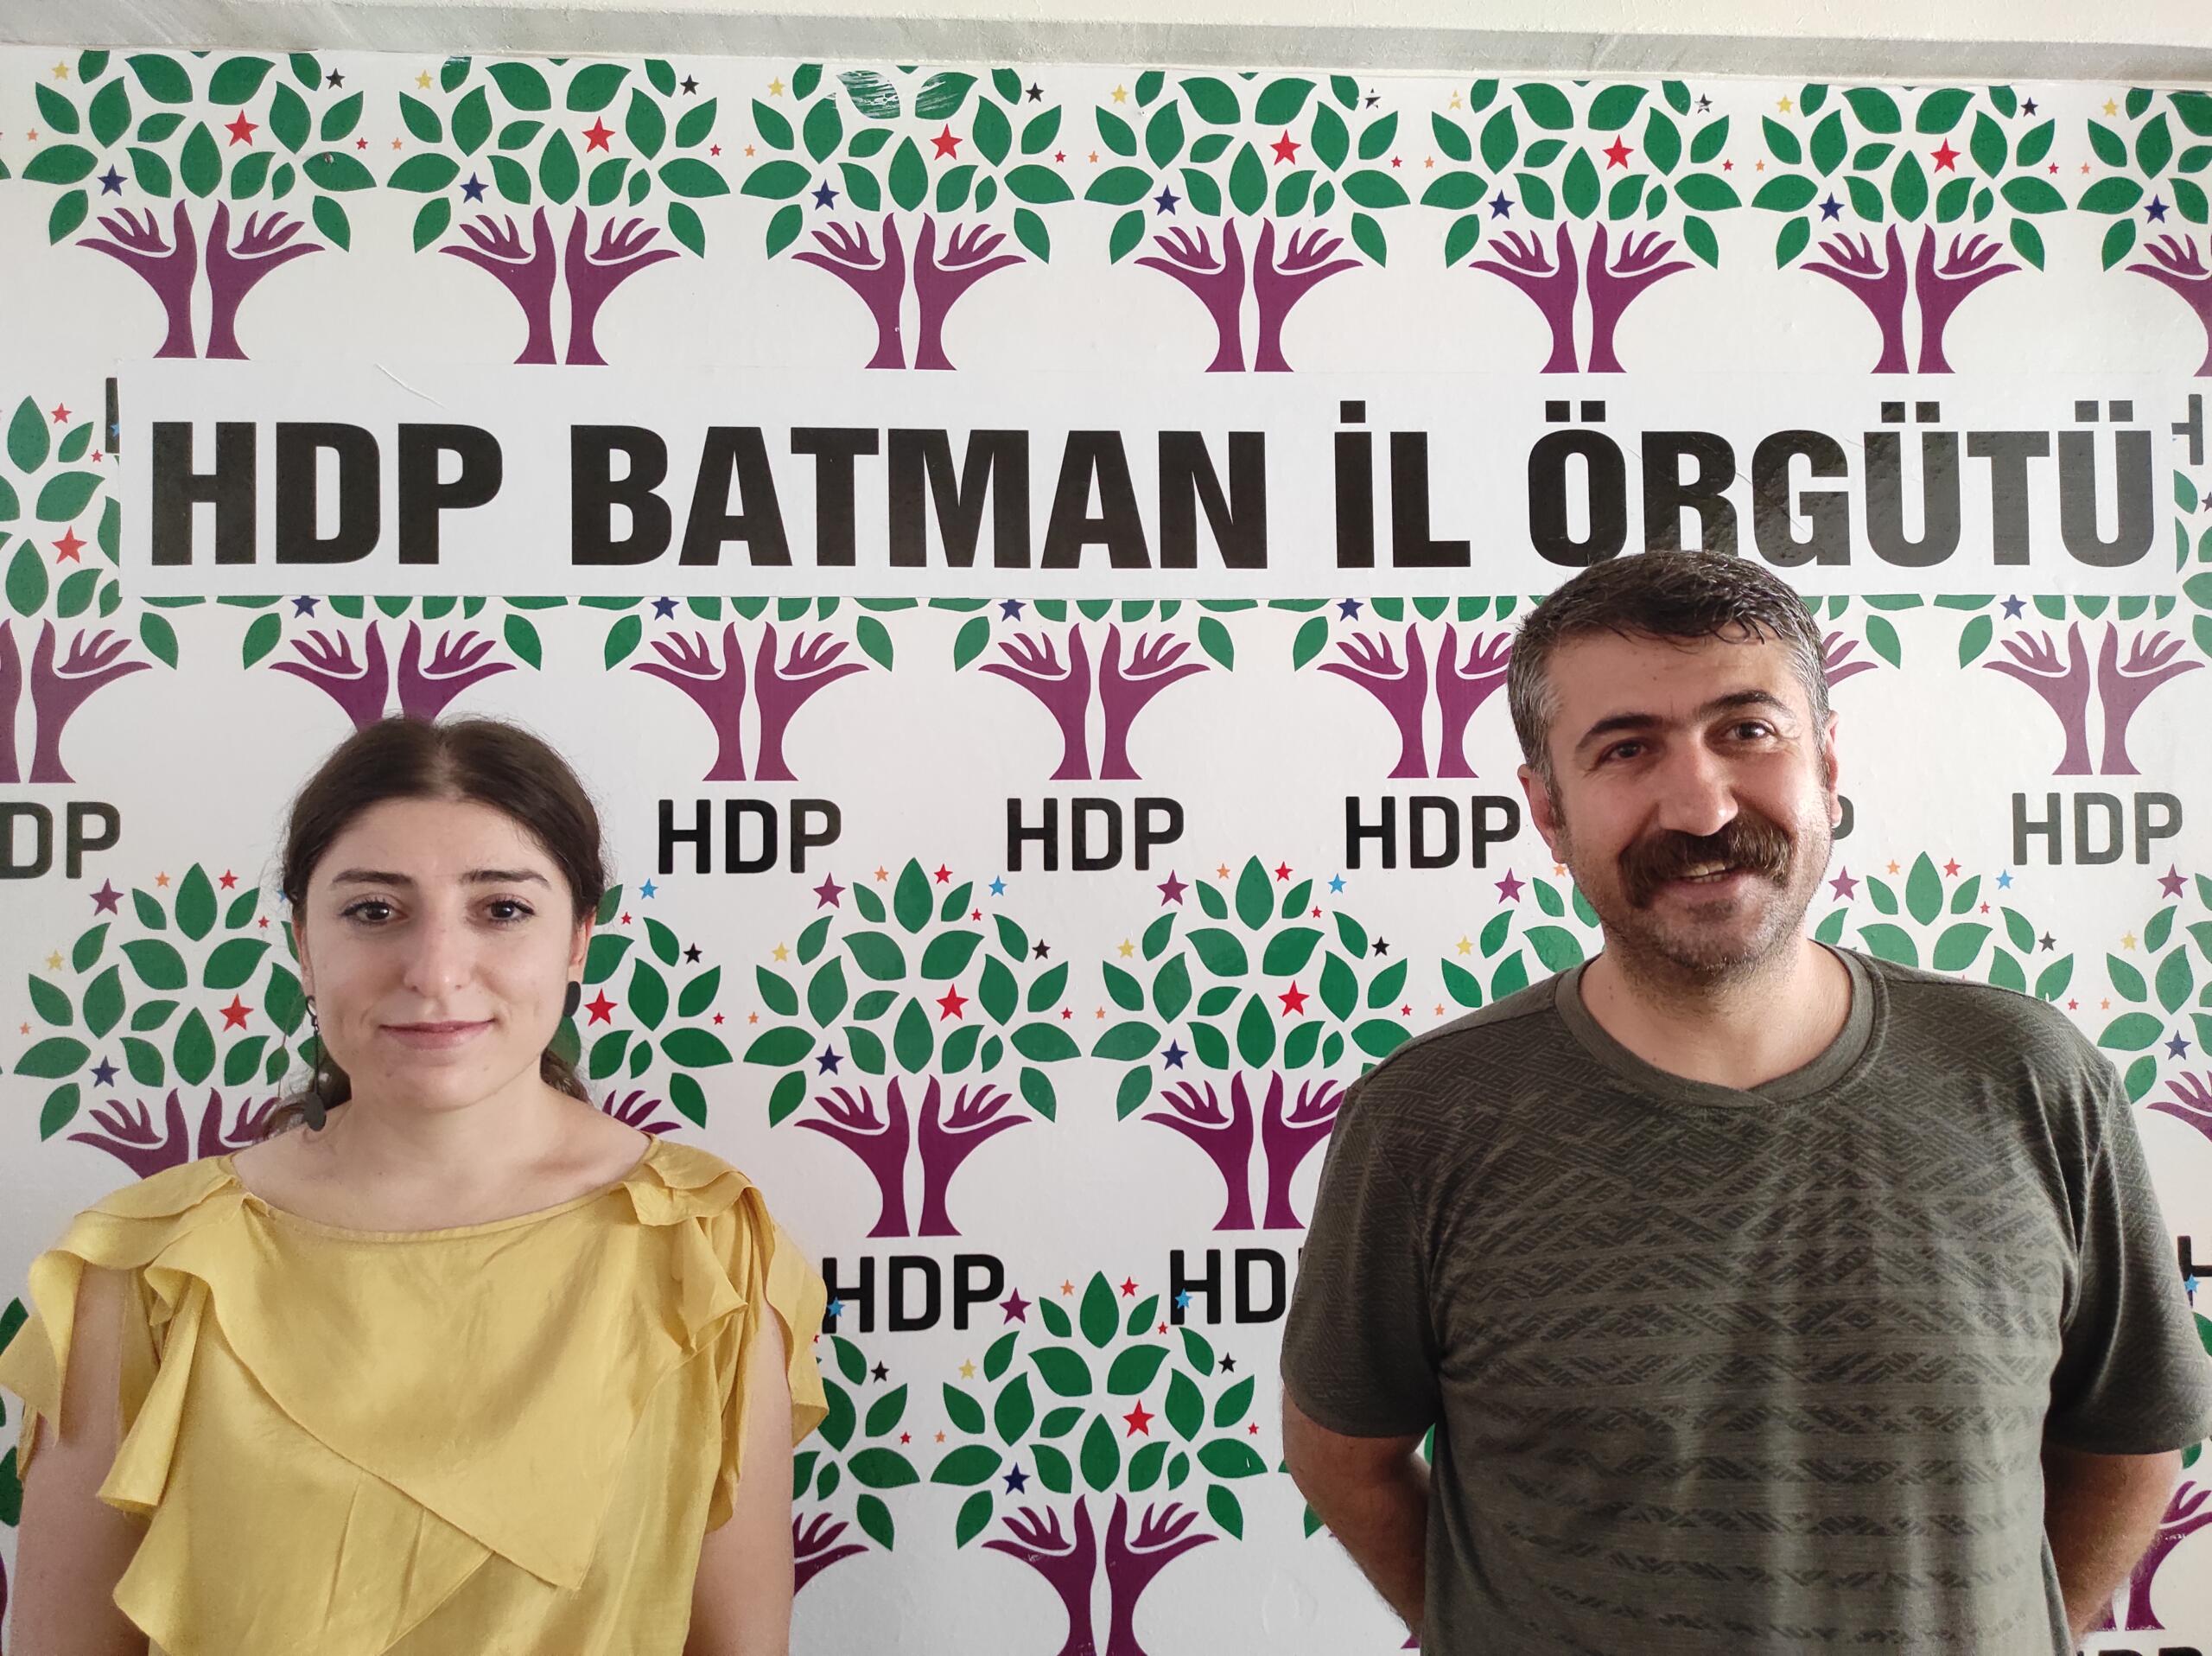 HDP Batman il örgütünden bayram mesajı